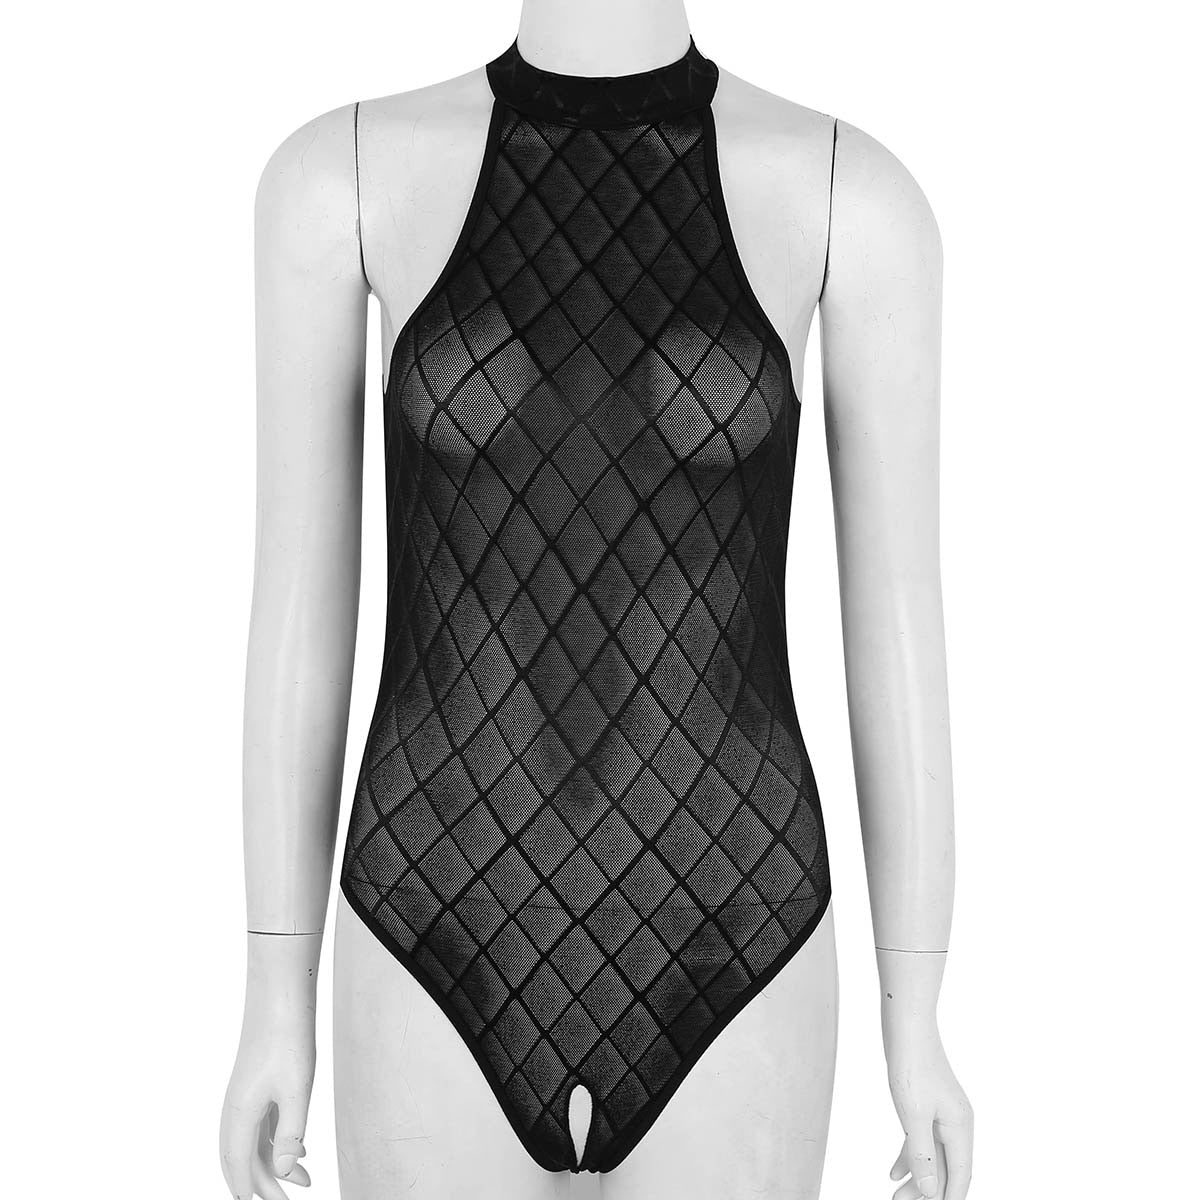 Sexy Einteiler-Bodysuit für Damen - Durchsichtiger Badeanzug mit hohem Schnitt, Ärmelloser Leotard, Sexy Catsuit - undergroundtechnostore.de